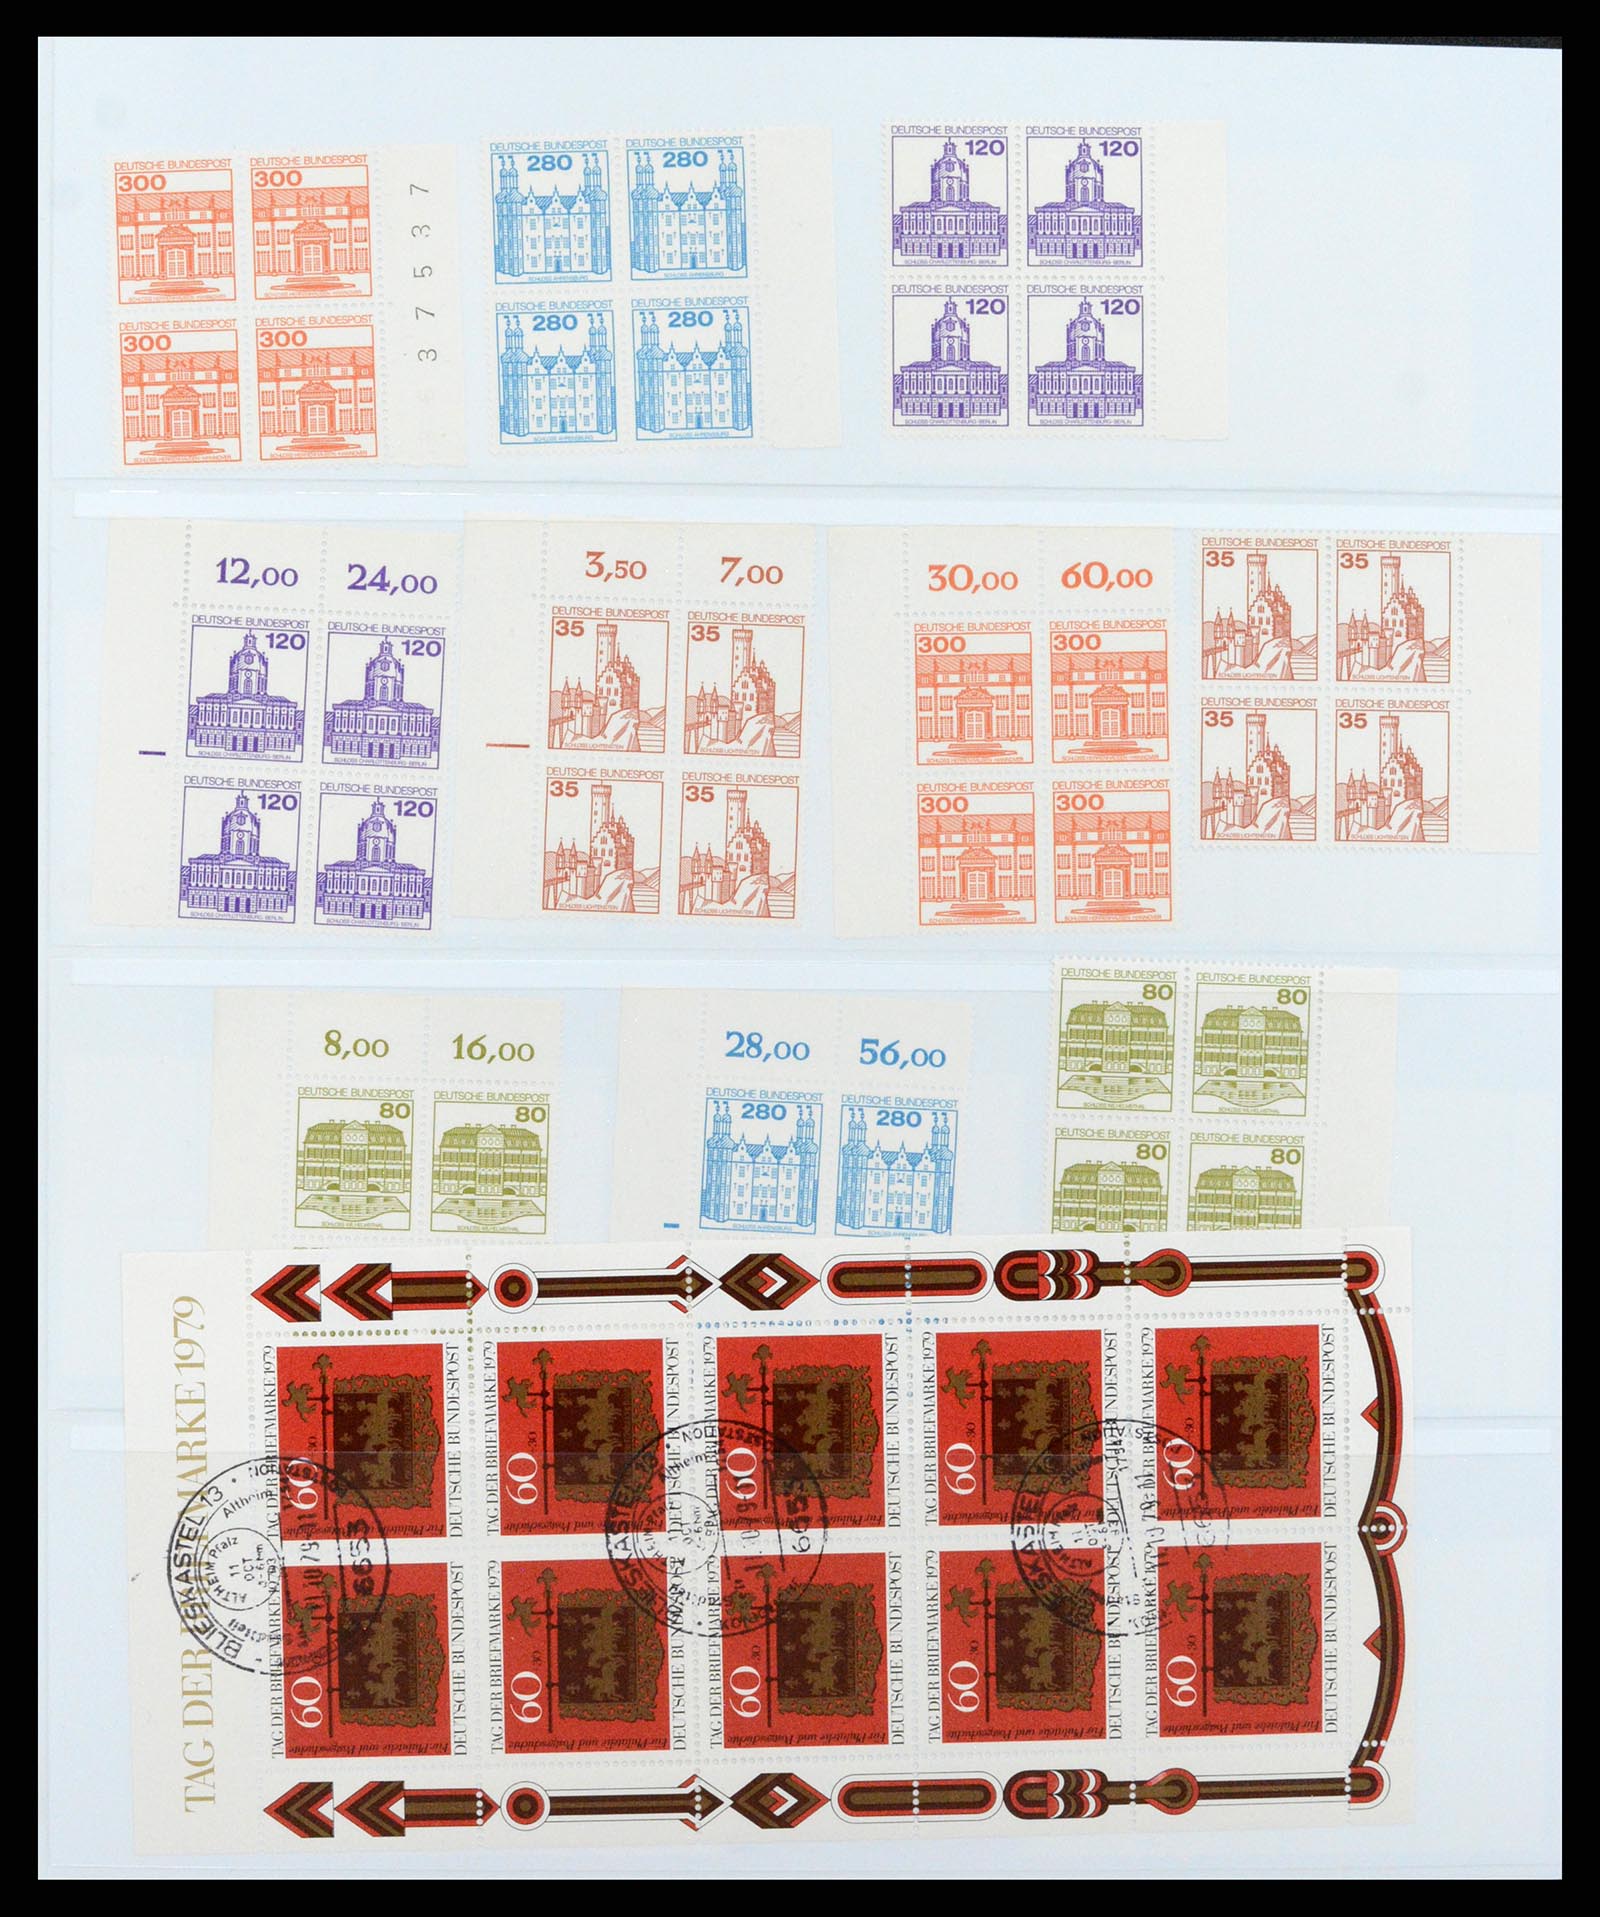 37336 020 - Postzegelverzameling 37336 Bundespost combinaties 1955-1980.